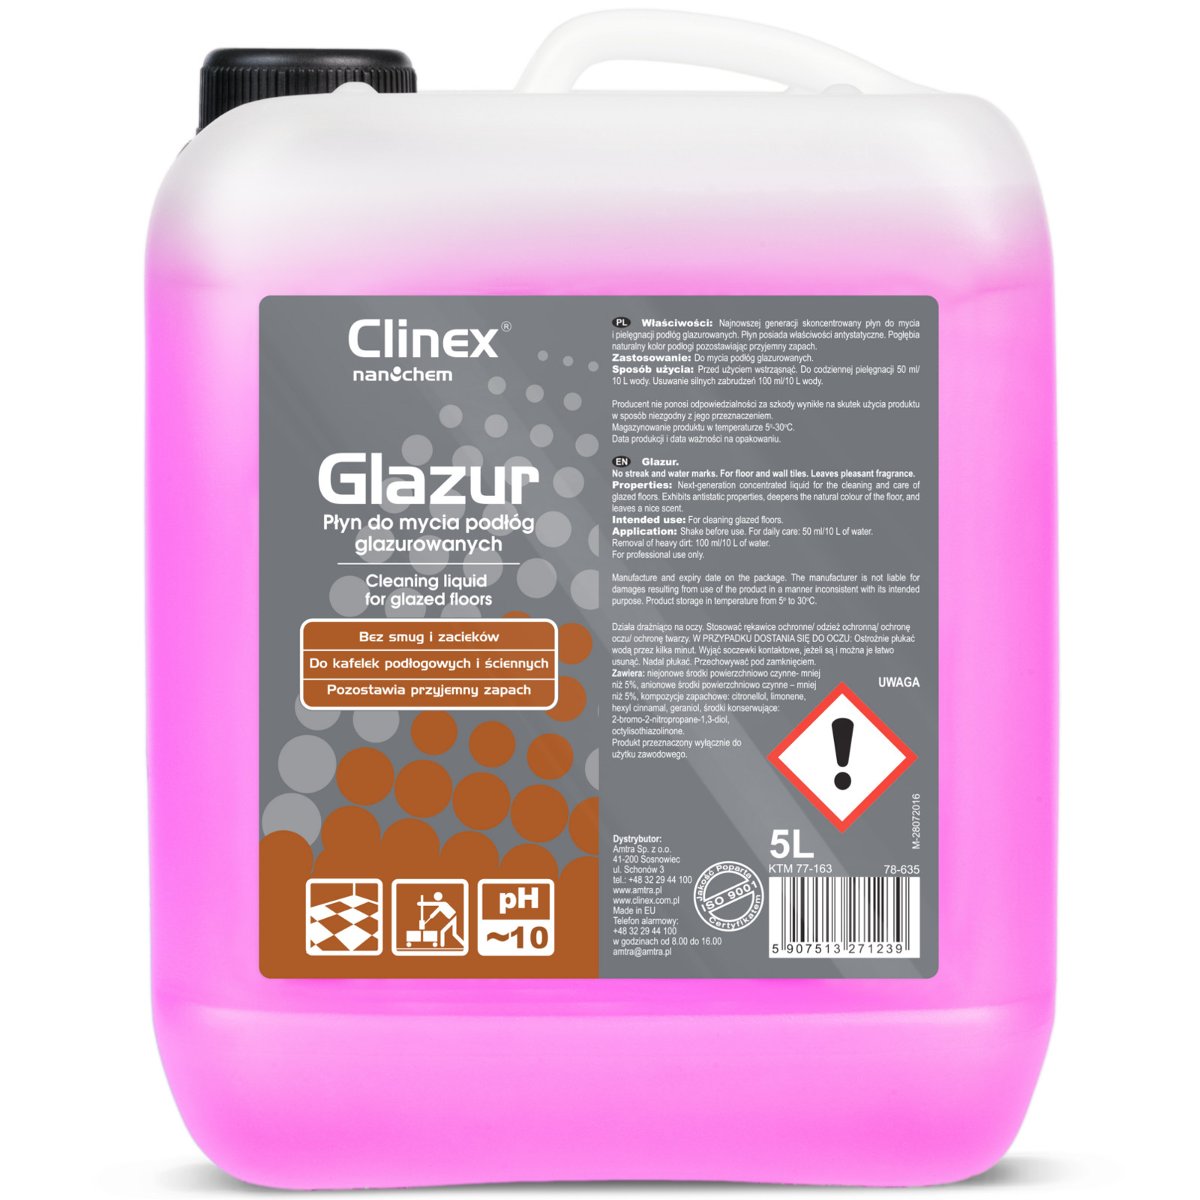 Clinex Glazur 5l do mycia podłóg glazurowanych